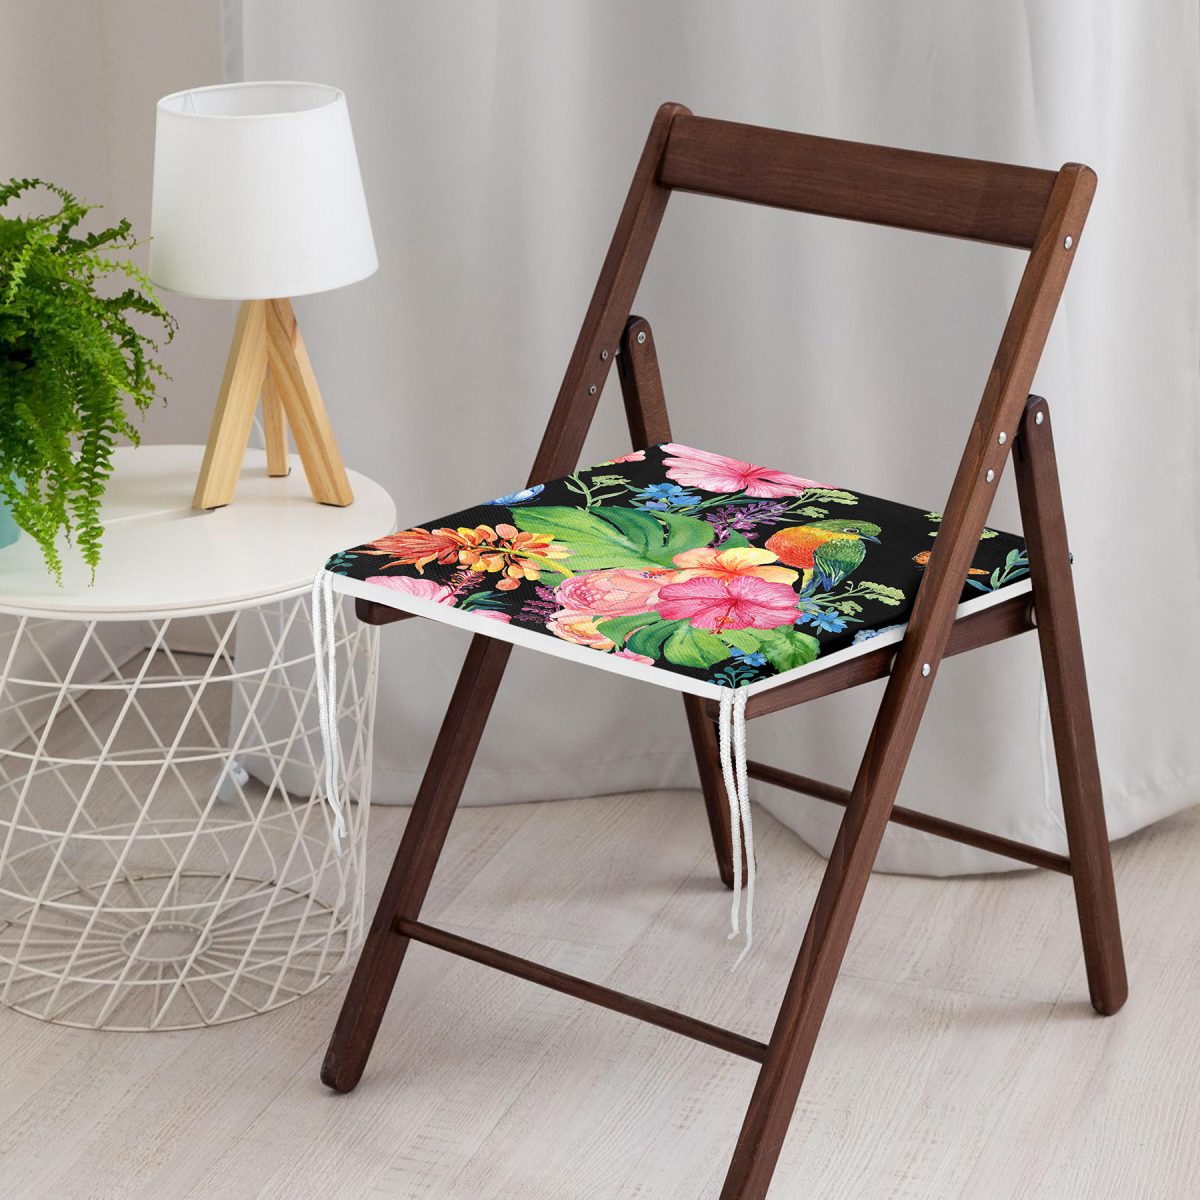 Watercolor Çiçek ve Kuş Motifli Özel Tasarım Fermuarlı Sandalye Minderi Realhomes